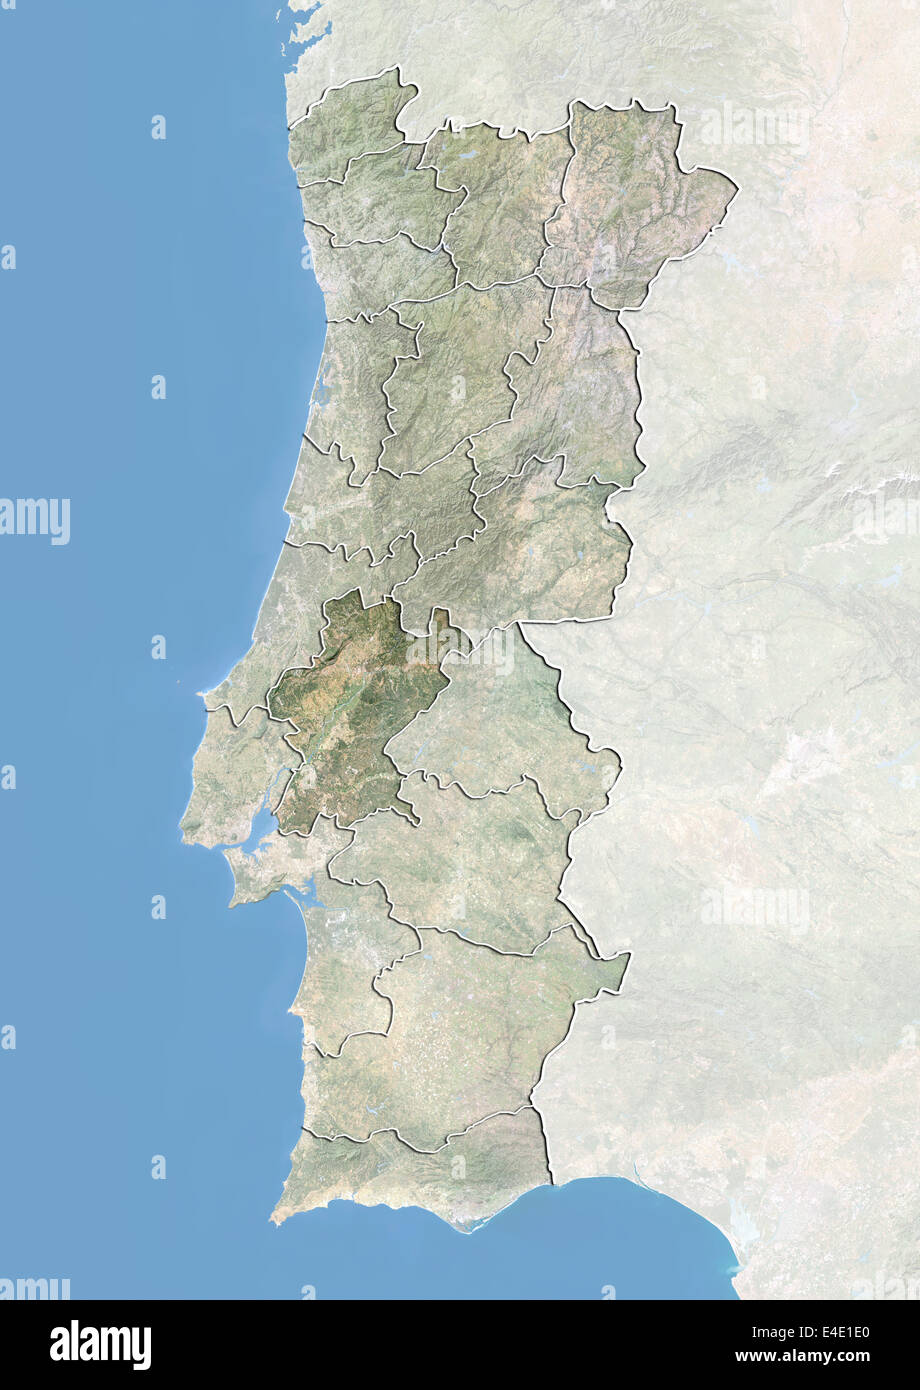 Le Portugal et le District de Santarem, image satellite avec effet de choc Banque D'Images